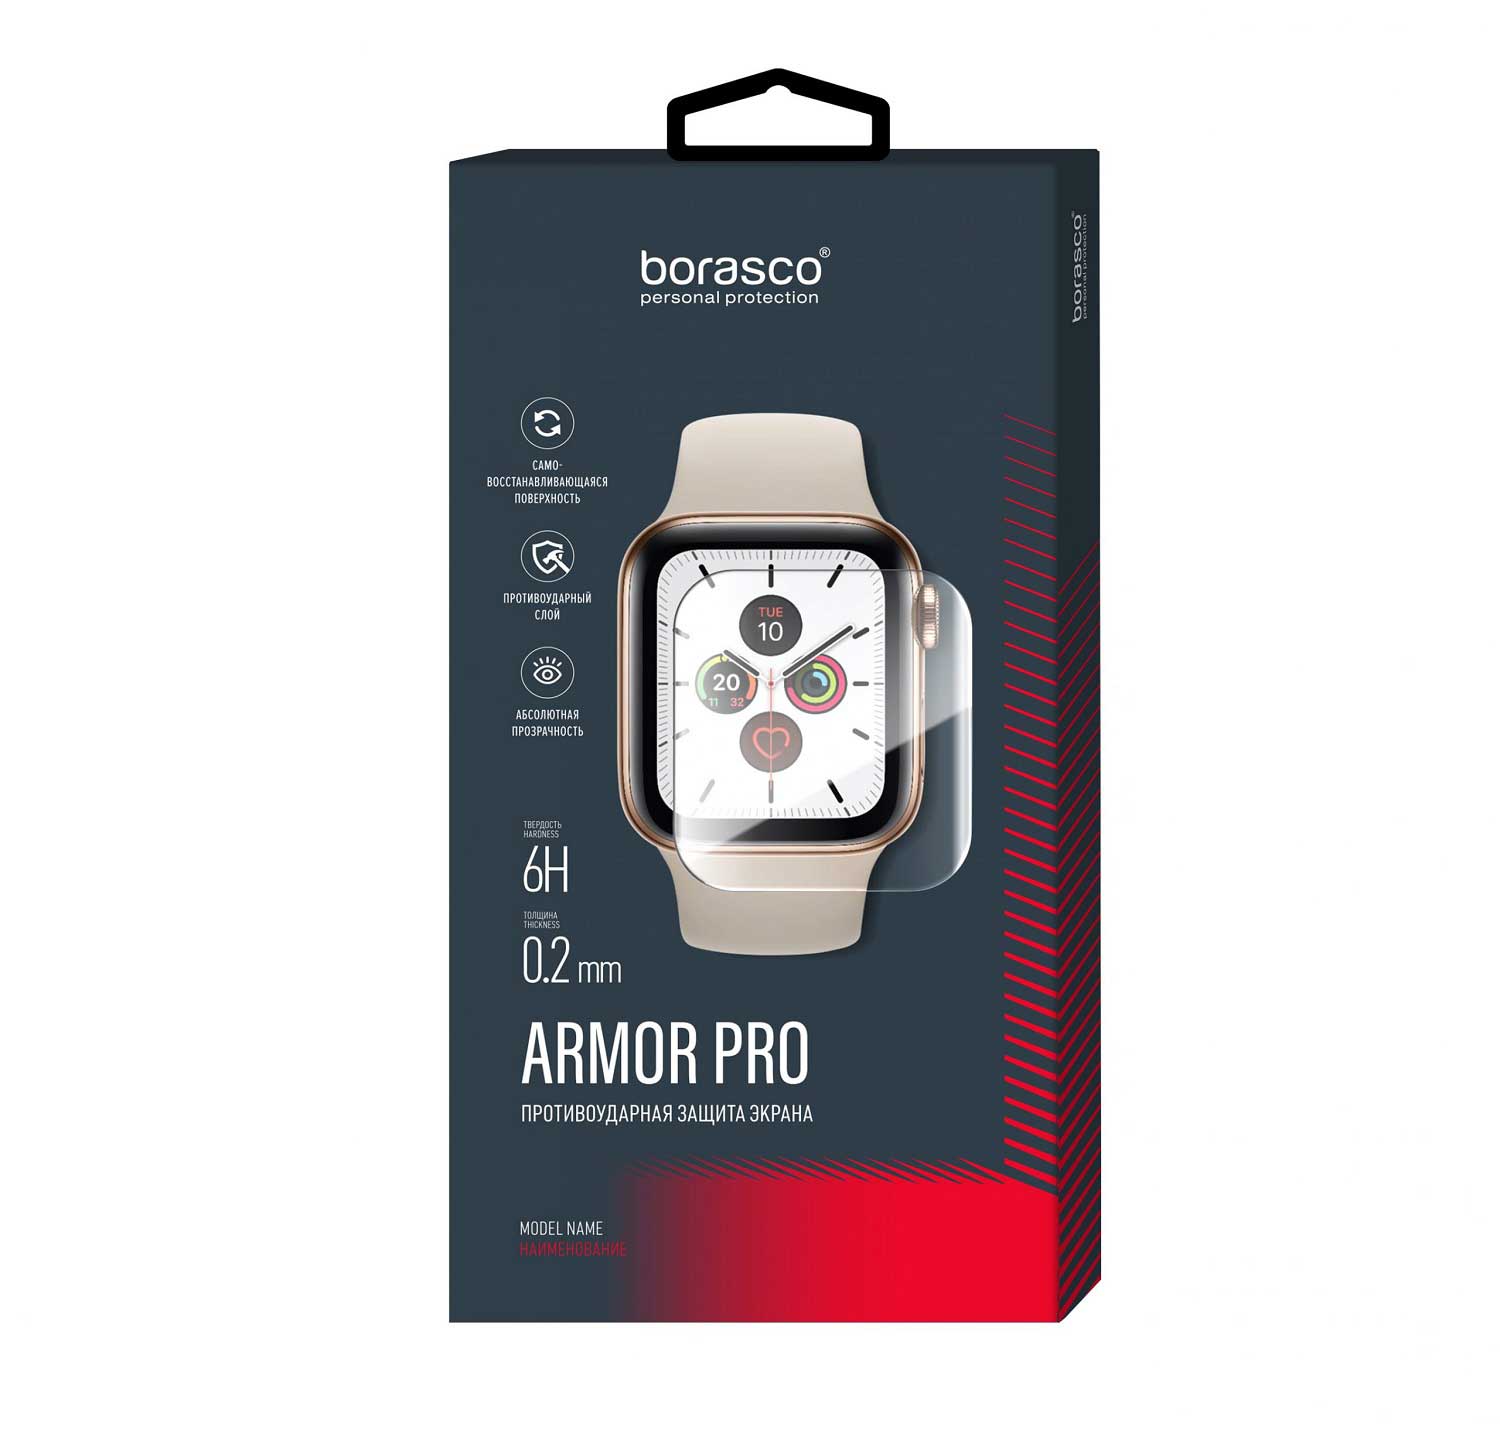 Защита экрана BoraSCO Armor Pro для Xiaomi Mi Band 2 матовый защита экрана borasco armor pro для honor band 2